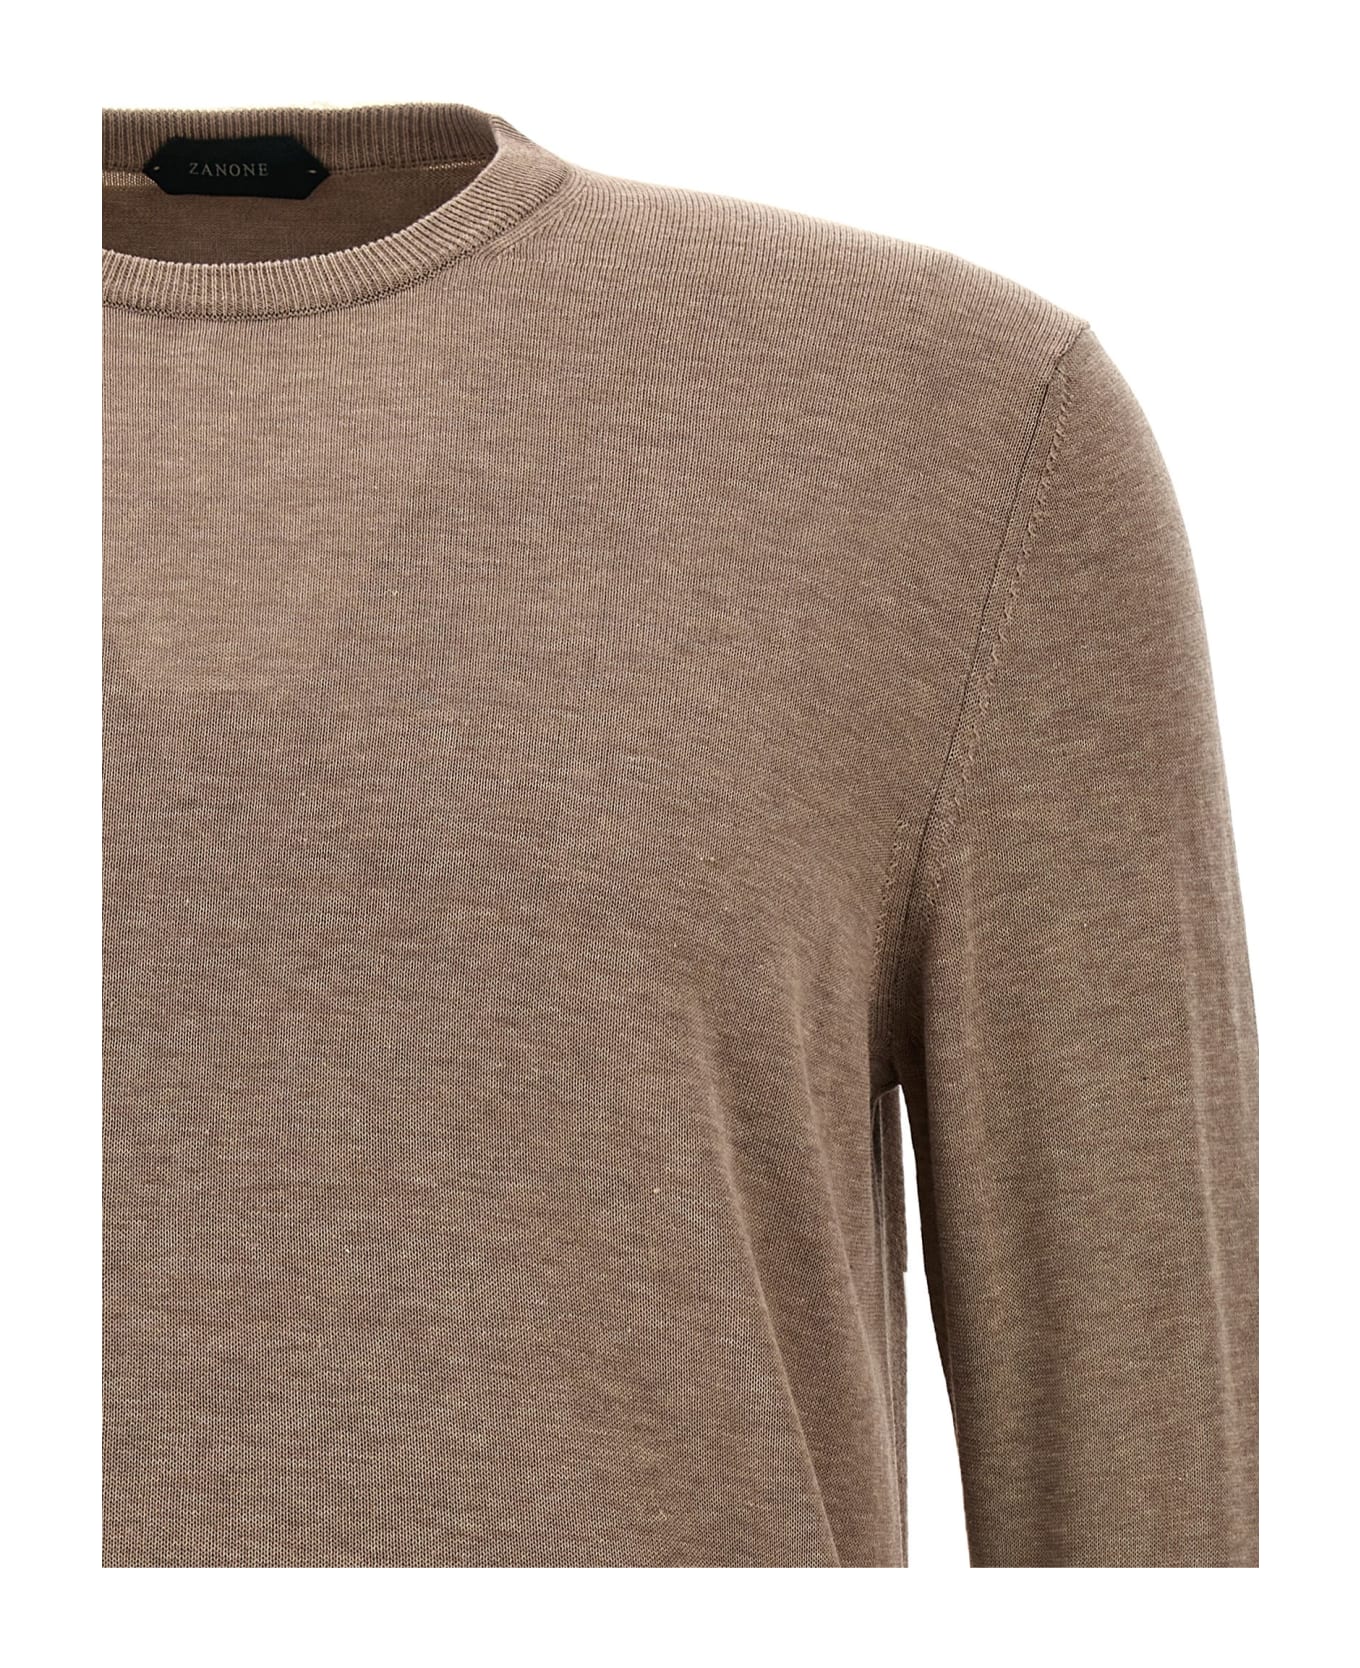 Zanone Cotton Crepe Sweater